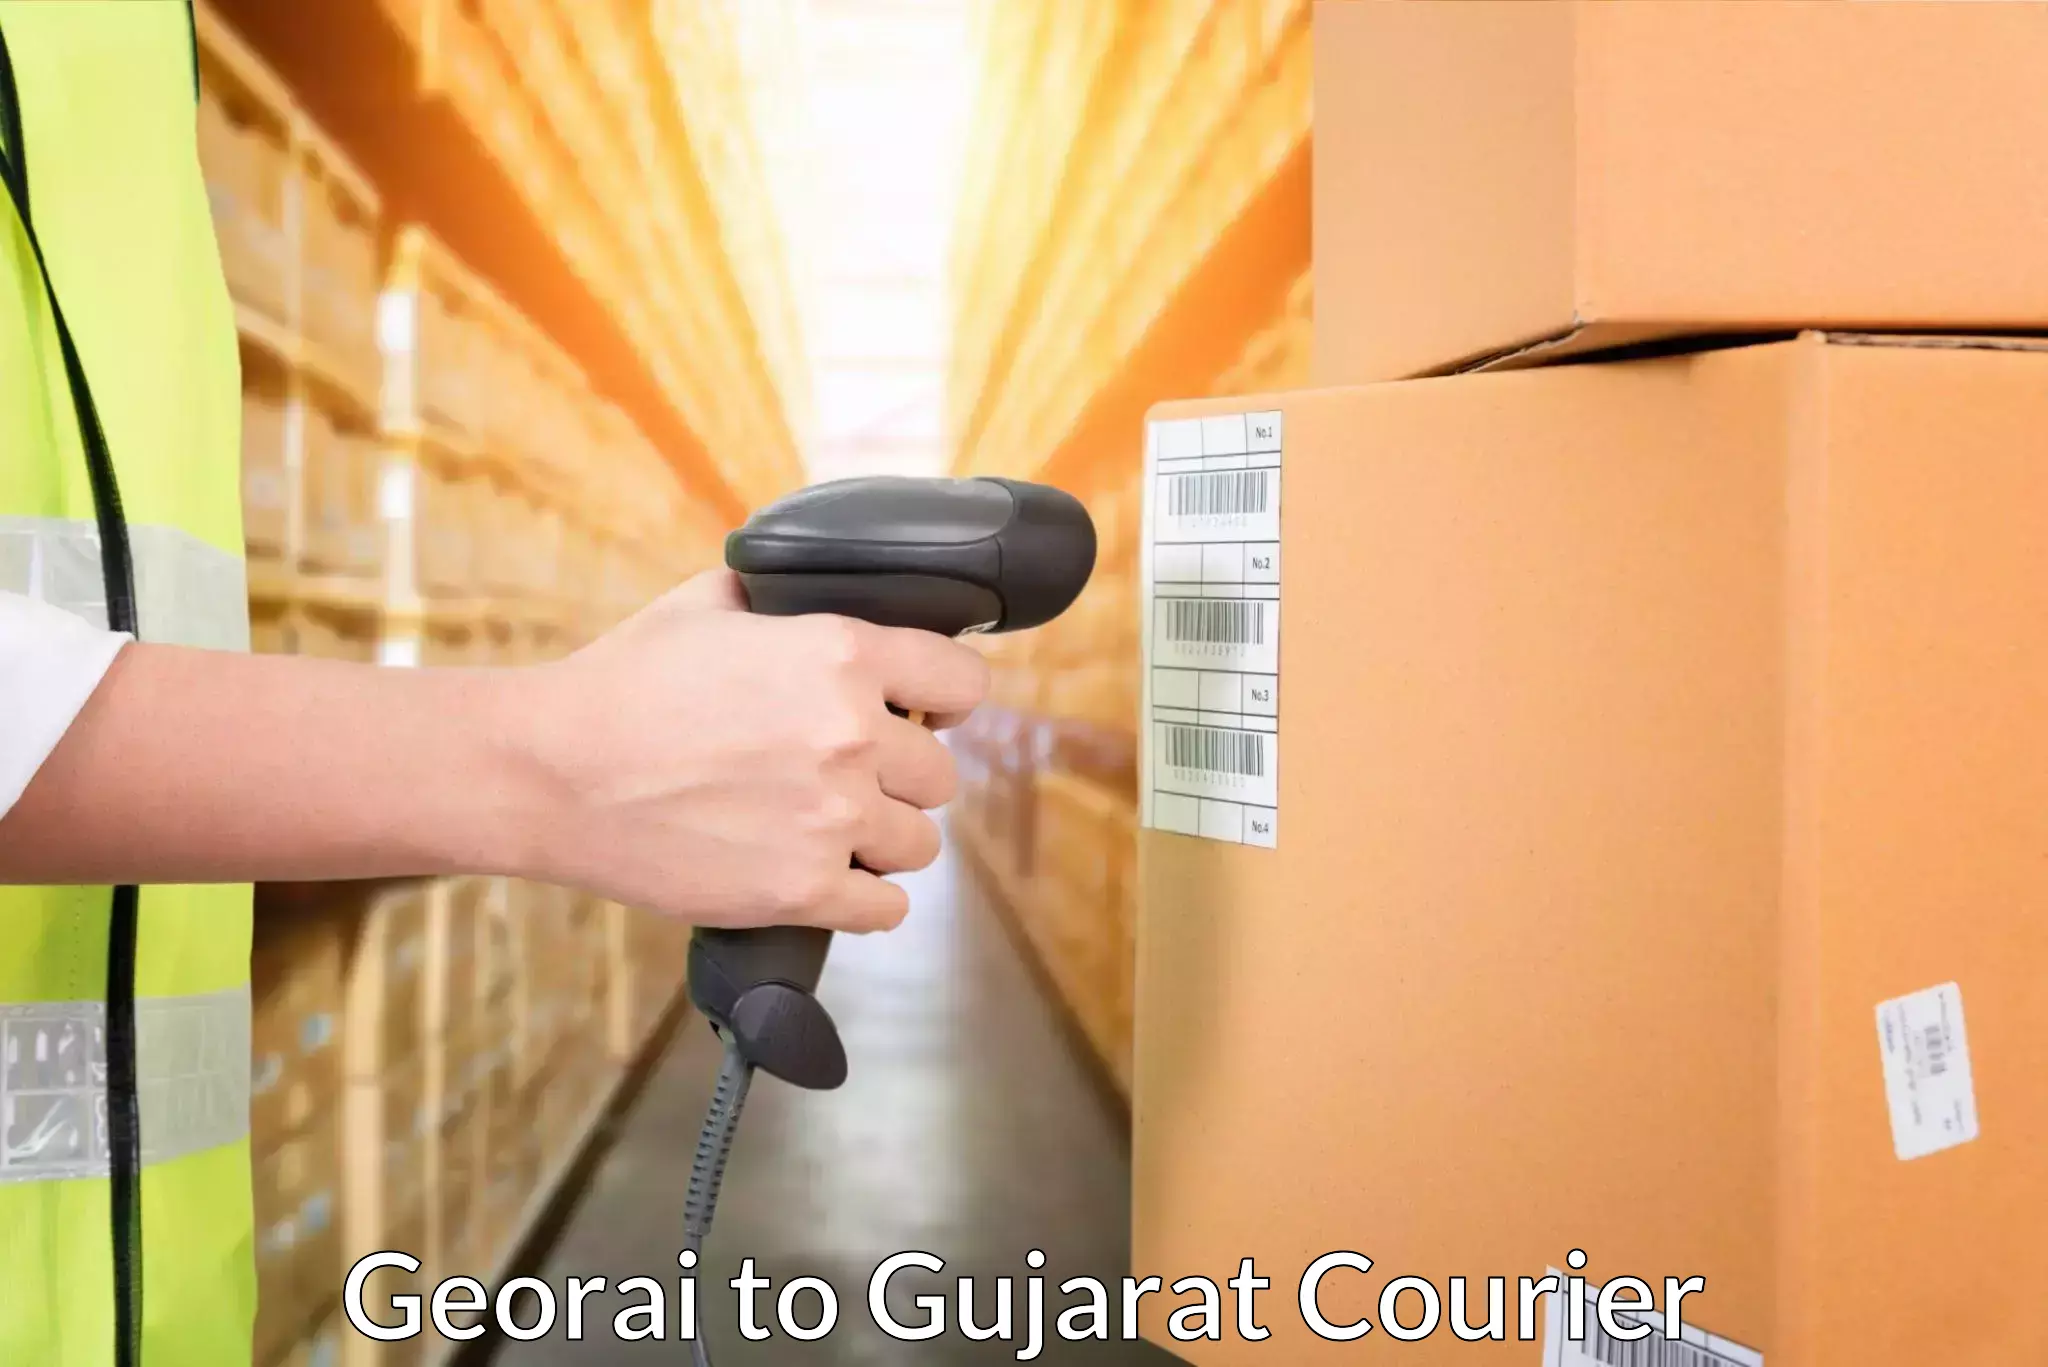 Courier service comparison Georai to Patdi